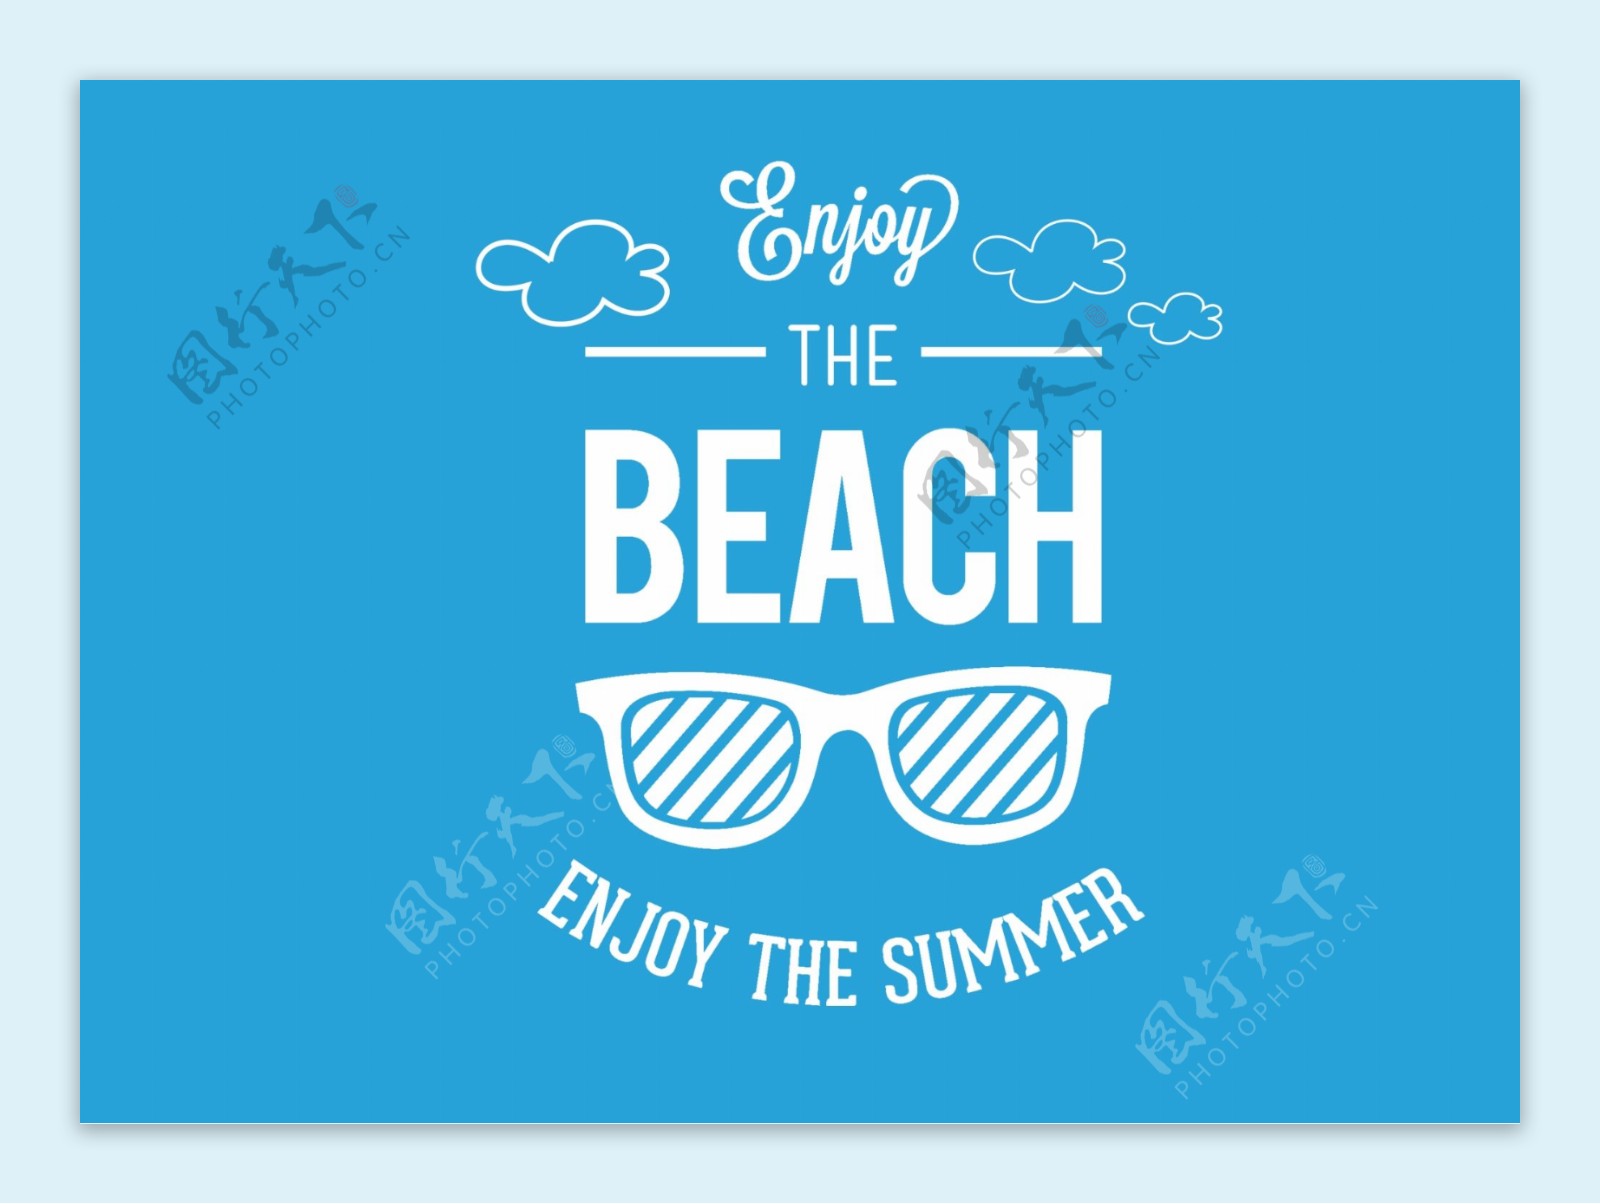 海岛沙滩文字模板设计